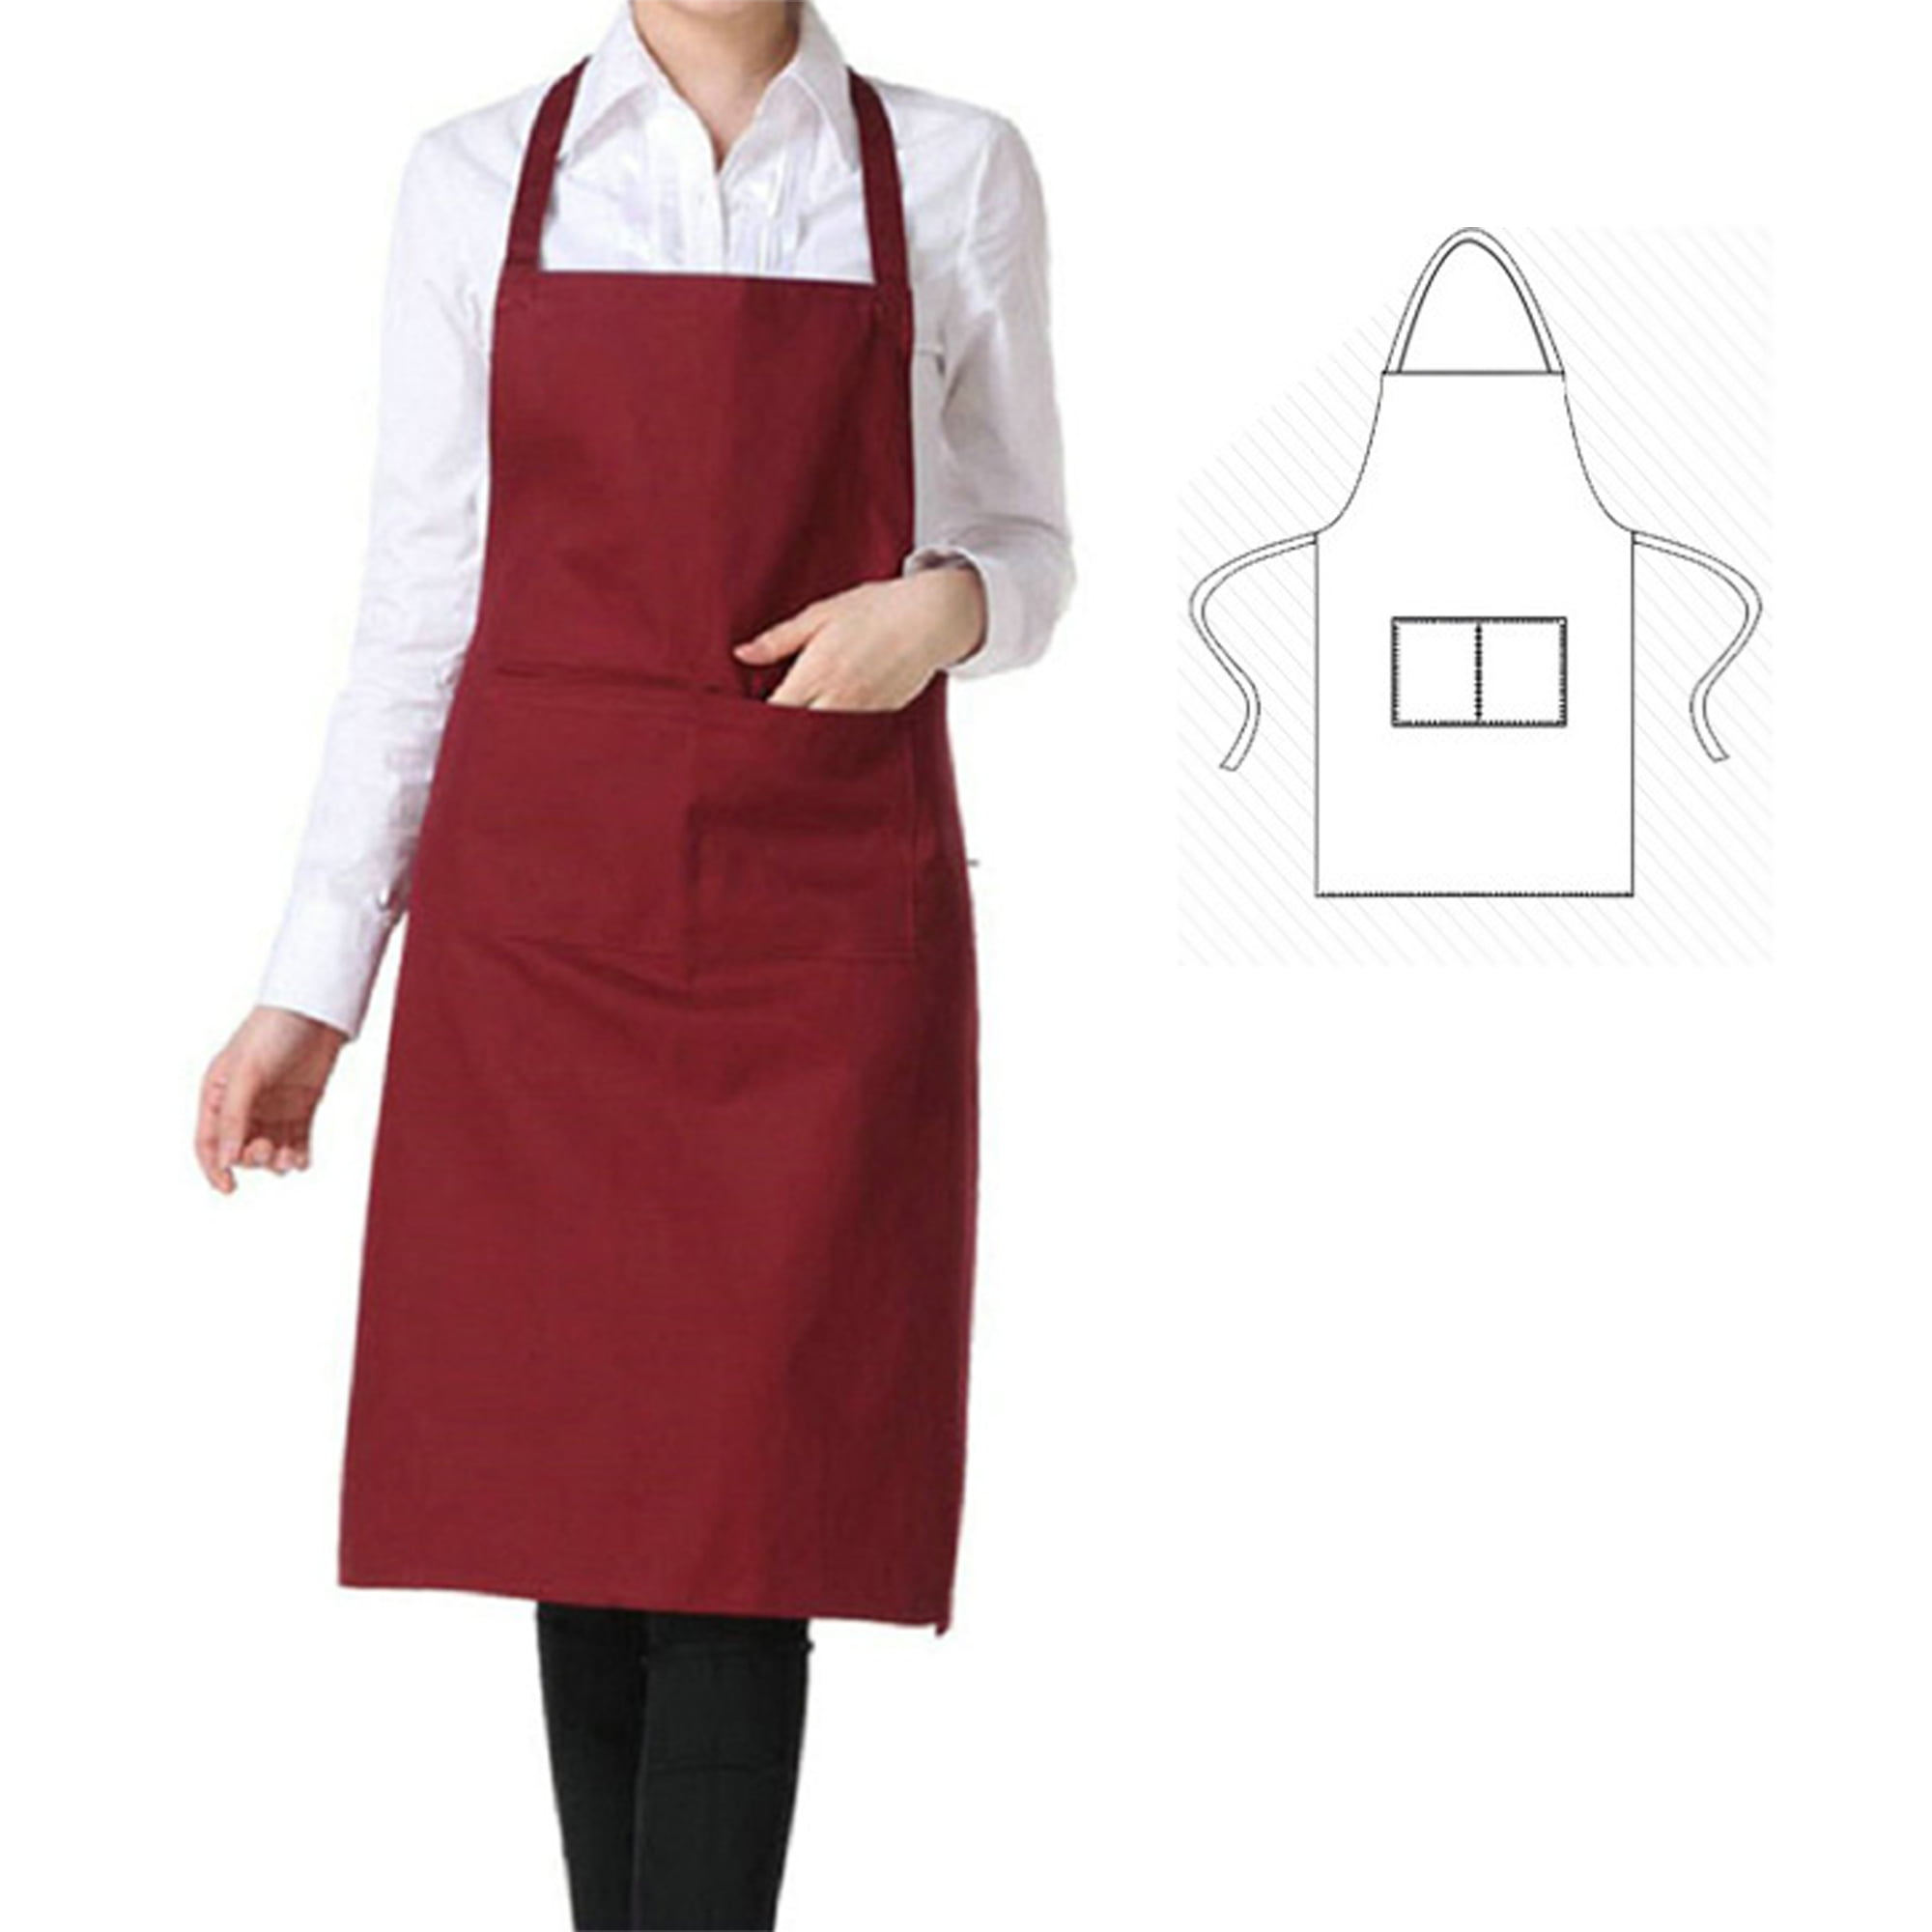 Women Solid Color Cooking Kitchen Apron Bib with Pockets Apron Uniform LP 